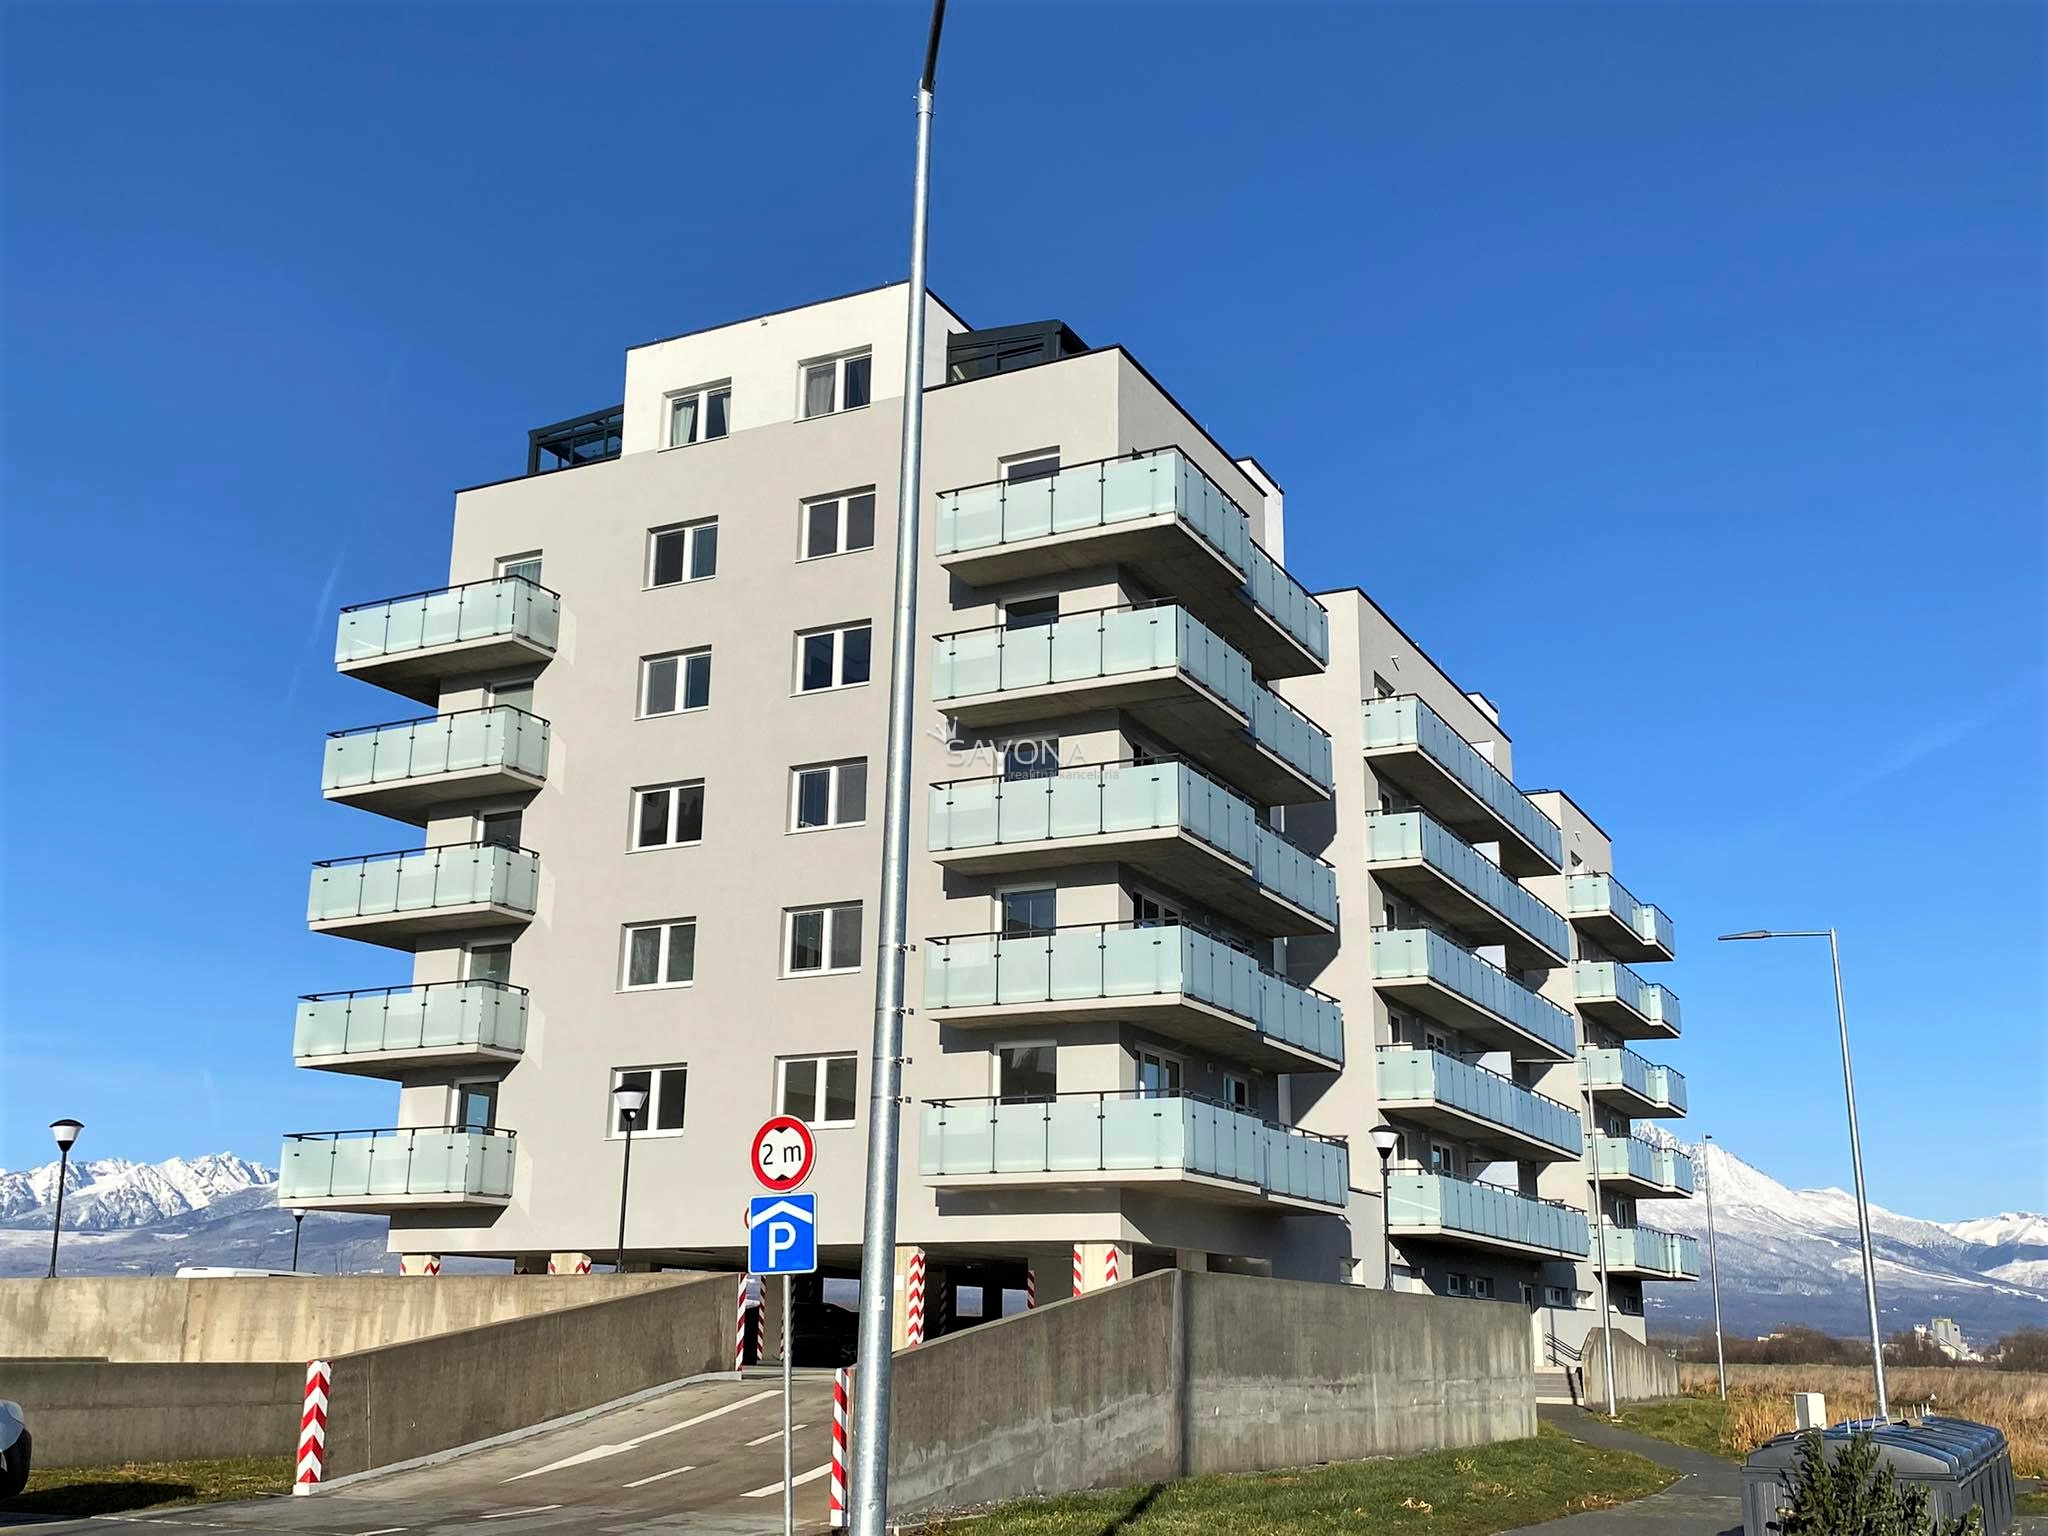 NA PRENÁJOM |  novostavba 2 izbového bytu s parkovacím státím, sídlisko JUH III, POPRAD